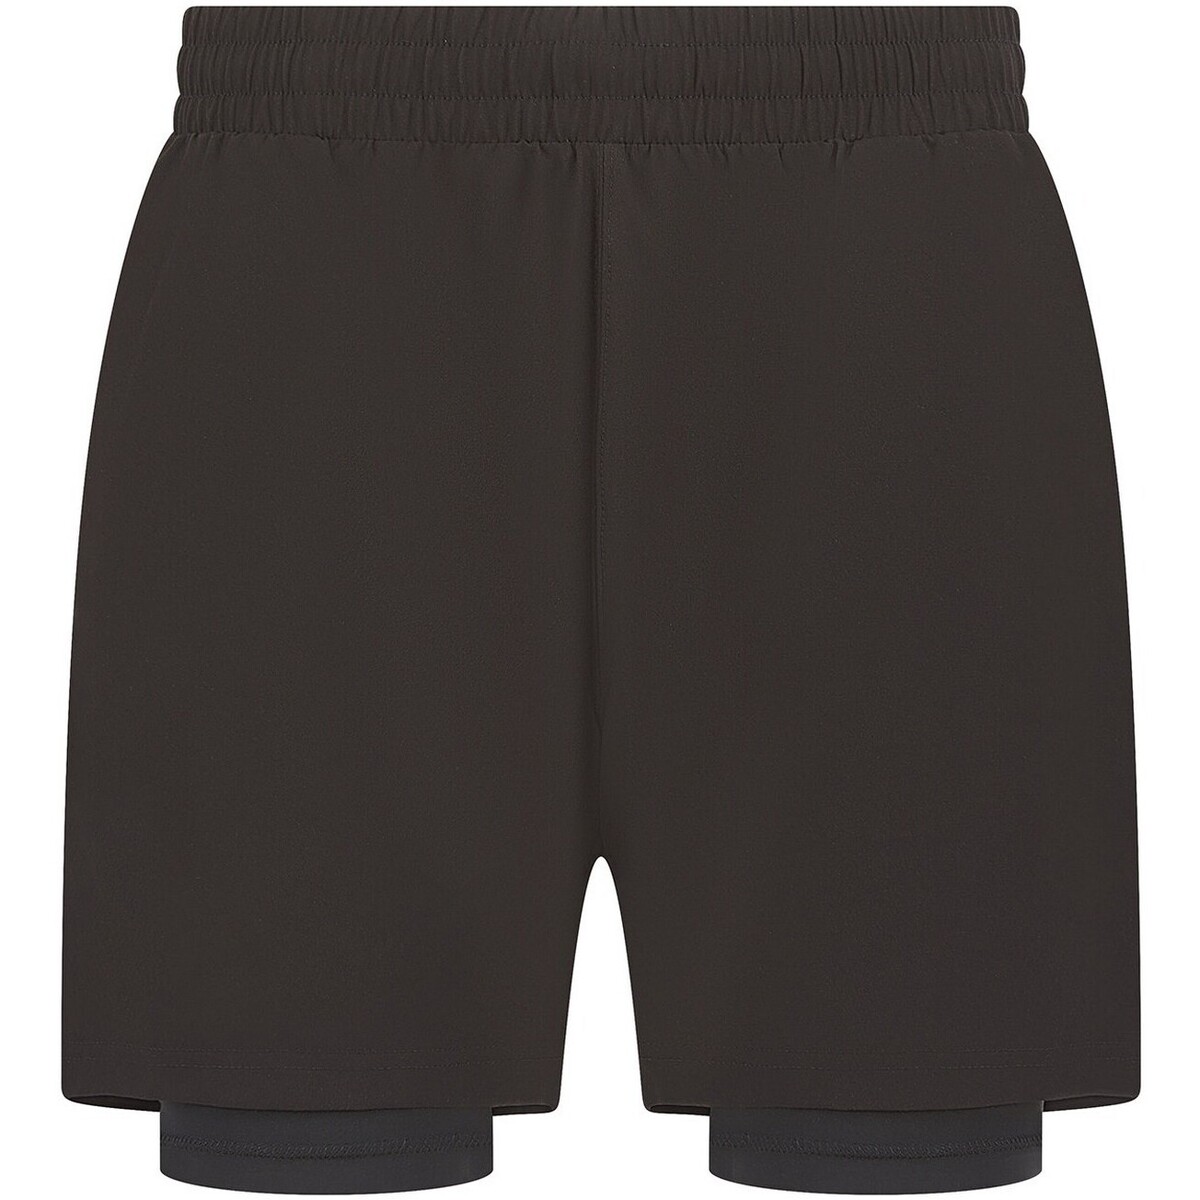 Vêtements Homme Shorts / Bermudas Tombo PC6784 Noir